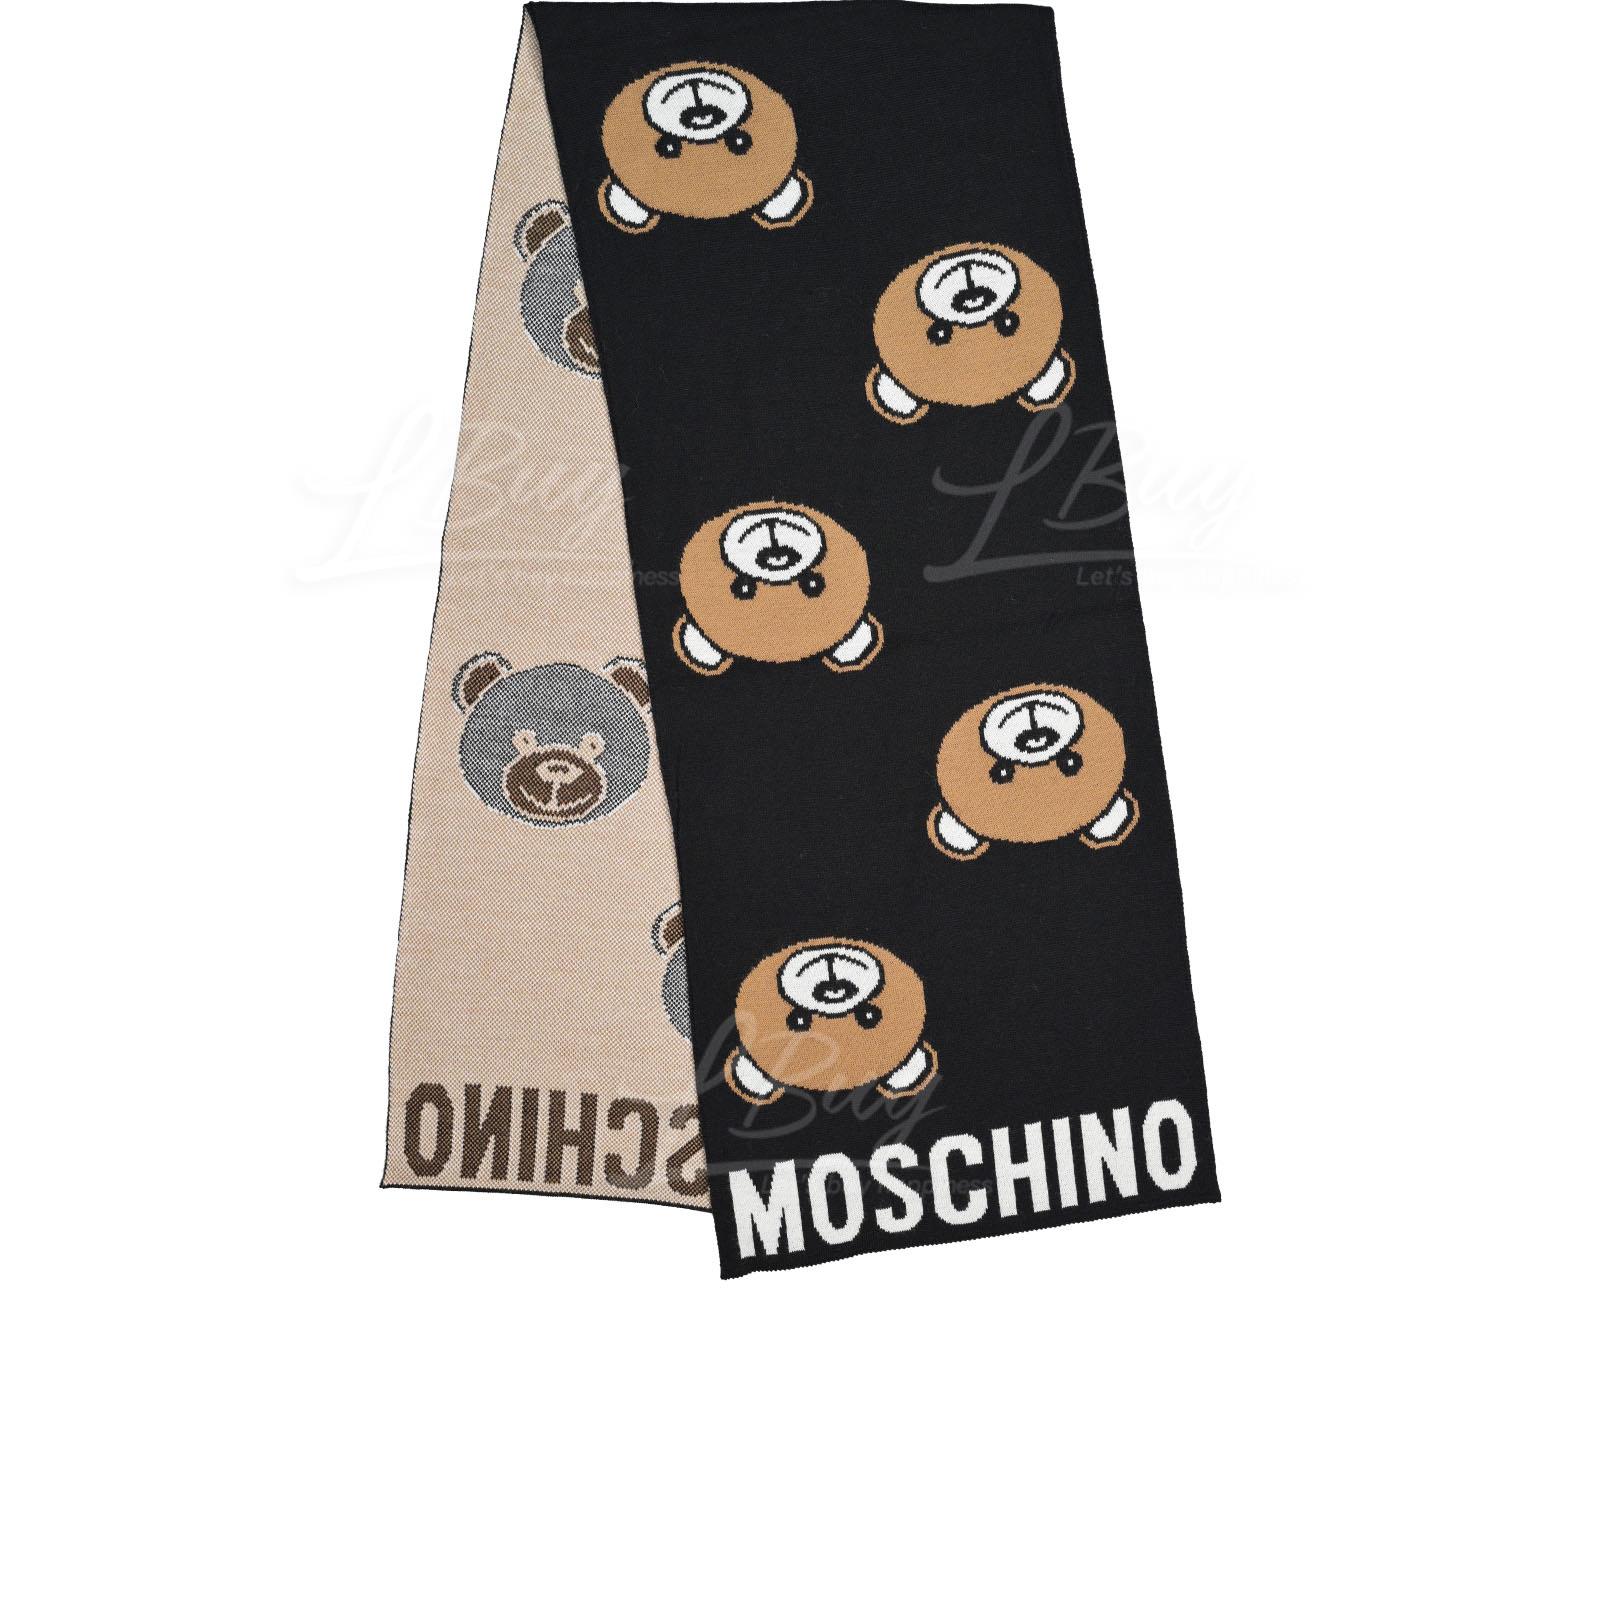 Moschino 泰迪熊黑色圍巾/頸巾